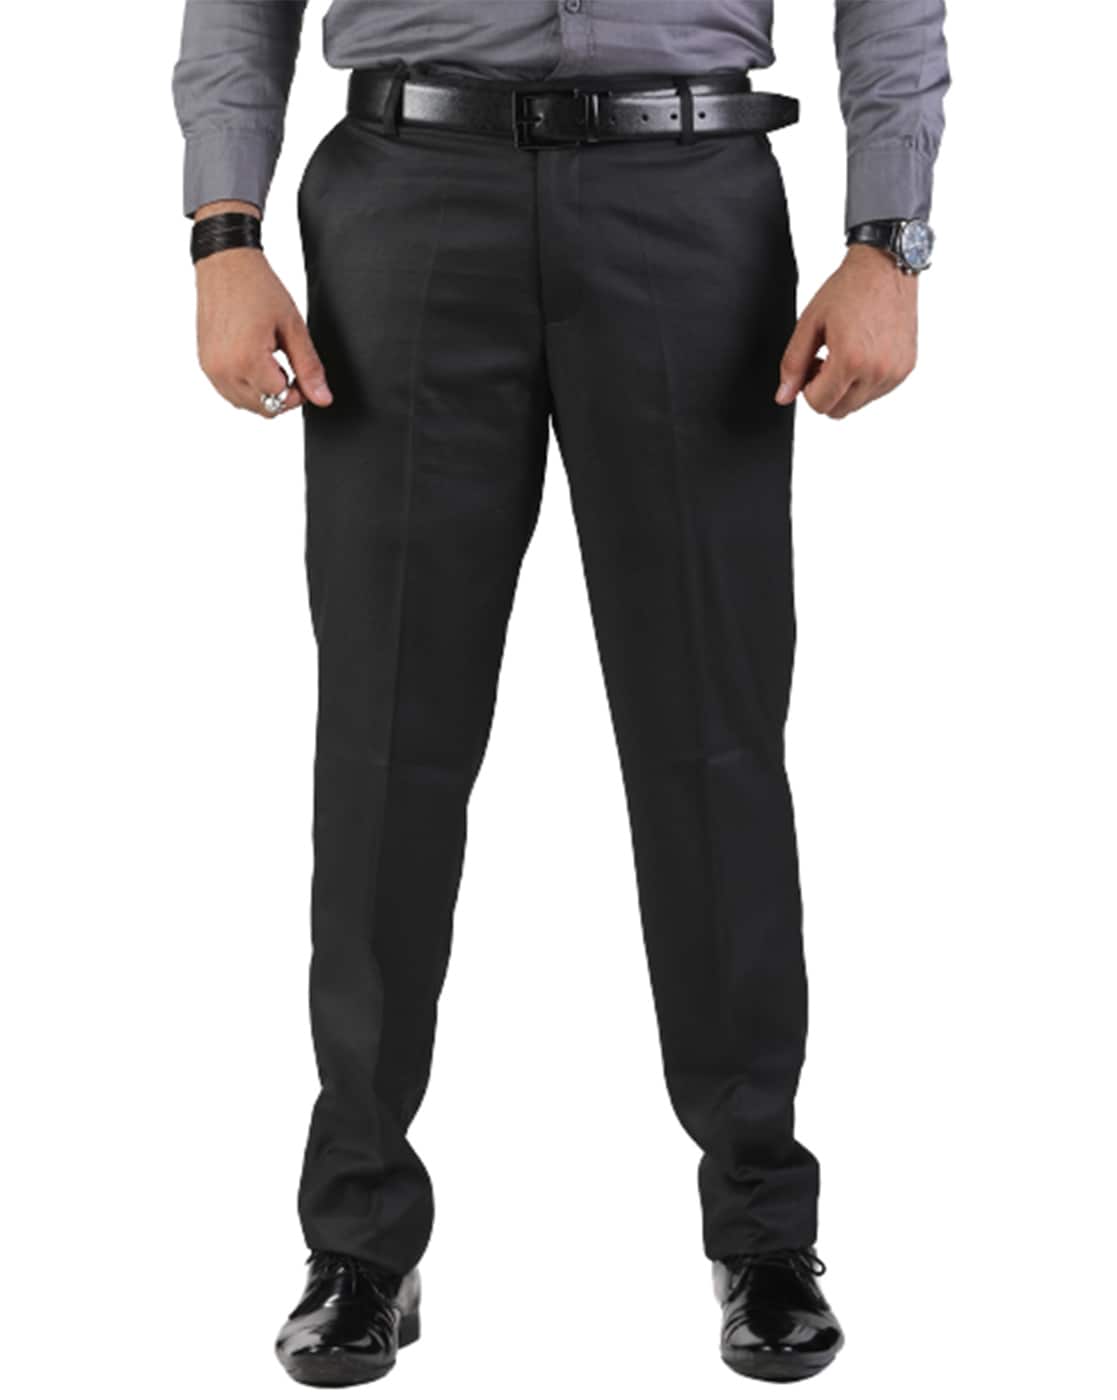 Buy Park Avenue Blue Super Slim Fit Trousers for Men Online @ Tata CLiQ